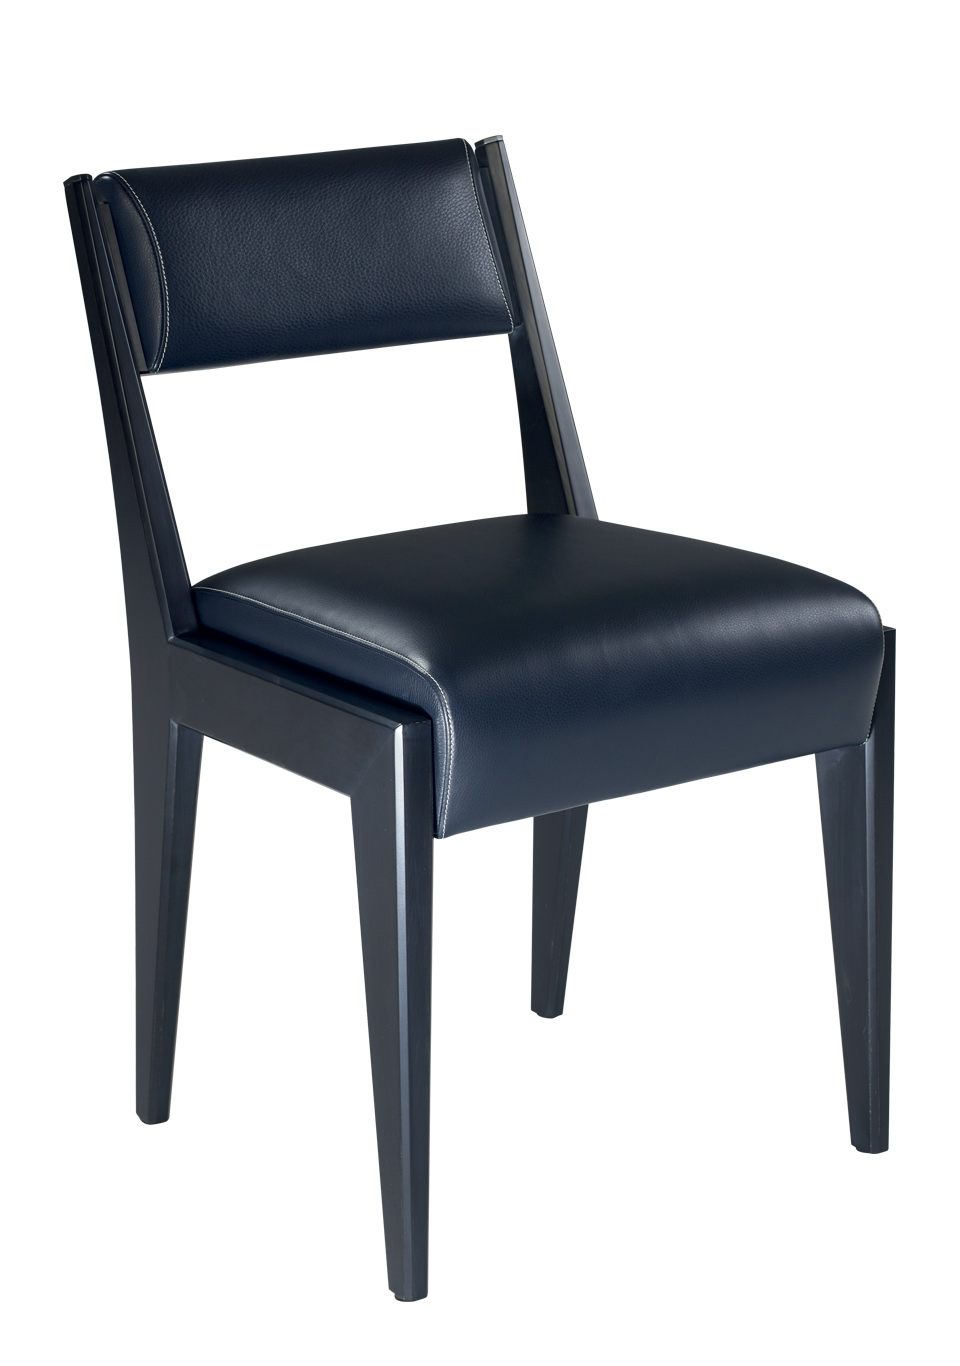 Iris est une chaise en bois avec des finitions en bronze et des coussins en cuir. Ce meuble fait partie de la collection « Indigo Tales » de Promemoria | Promemoria